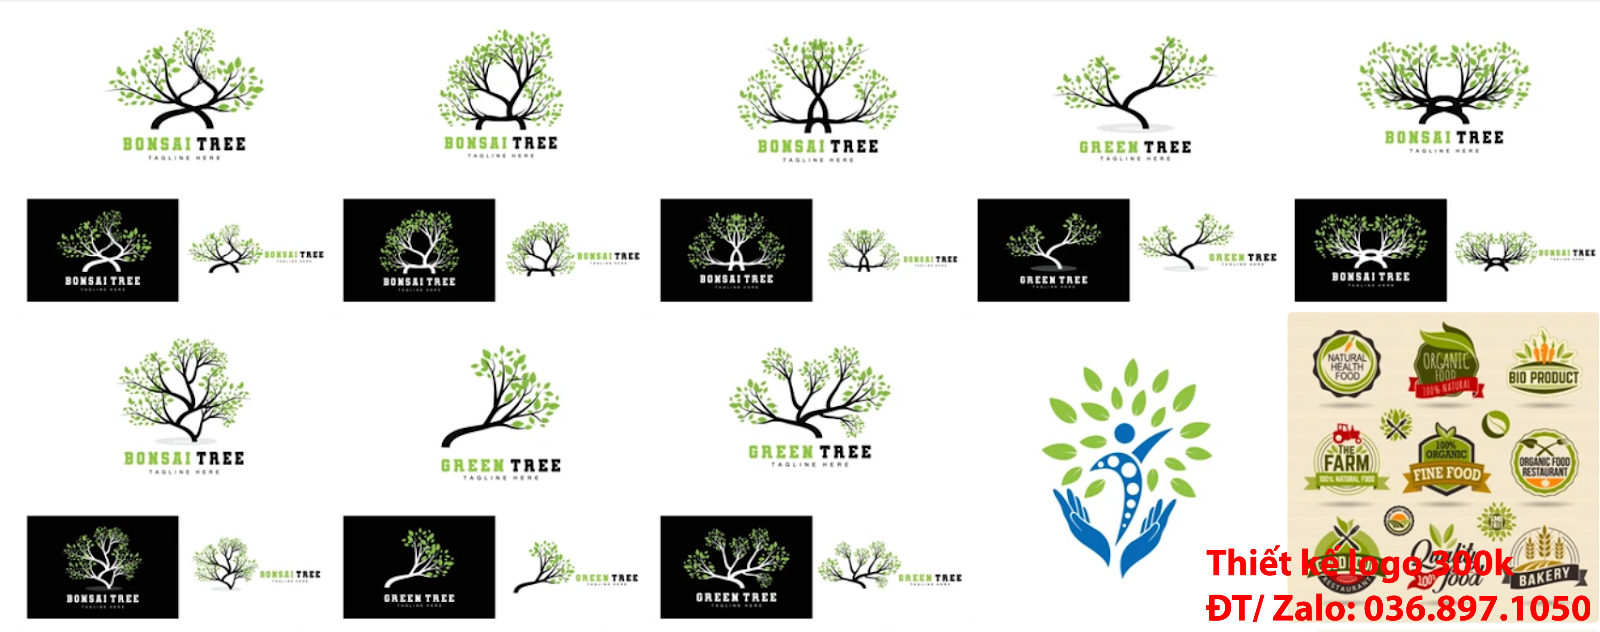 Mẫu logo cây xanh đẹp miễn phí chất lượng cao, uy tín và chuyên nghiệp